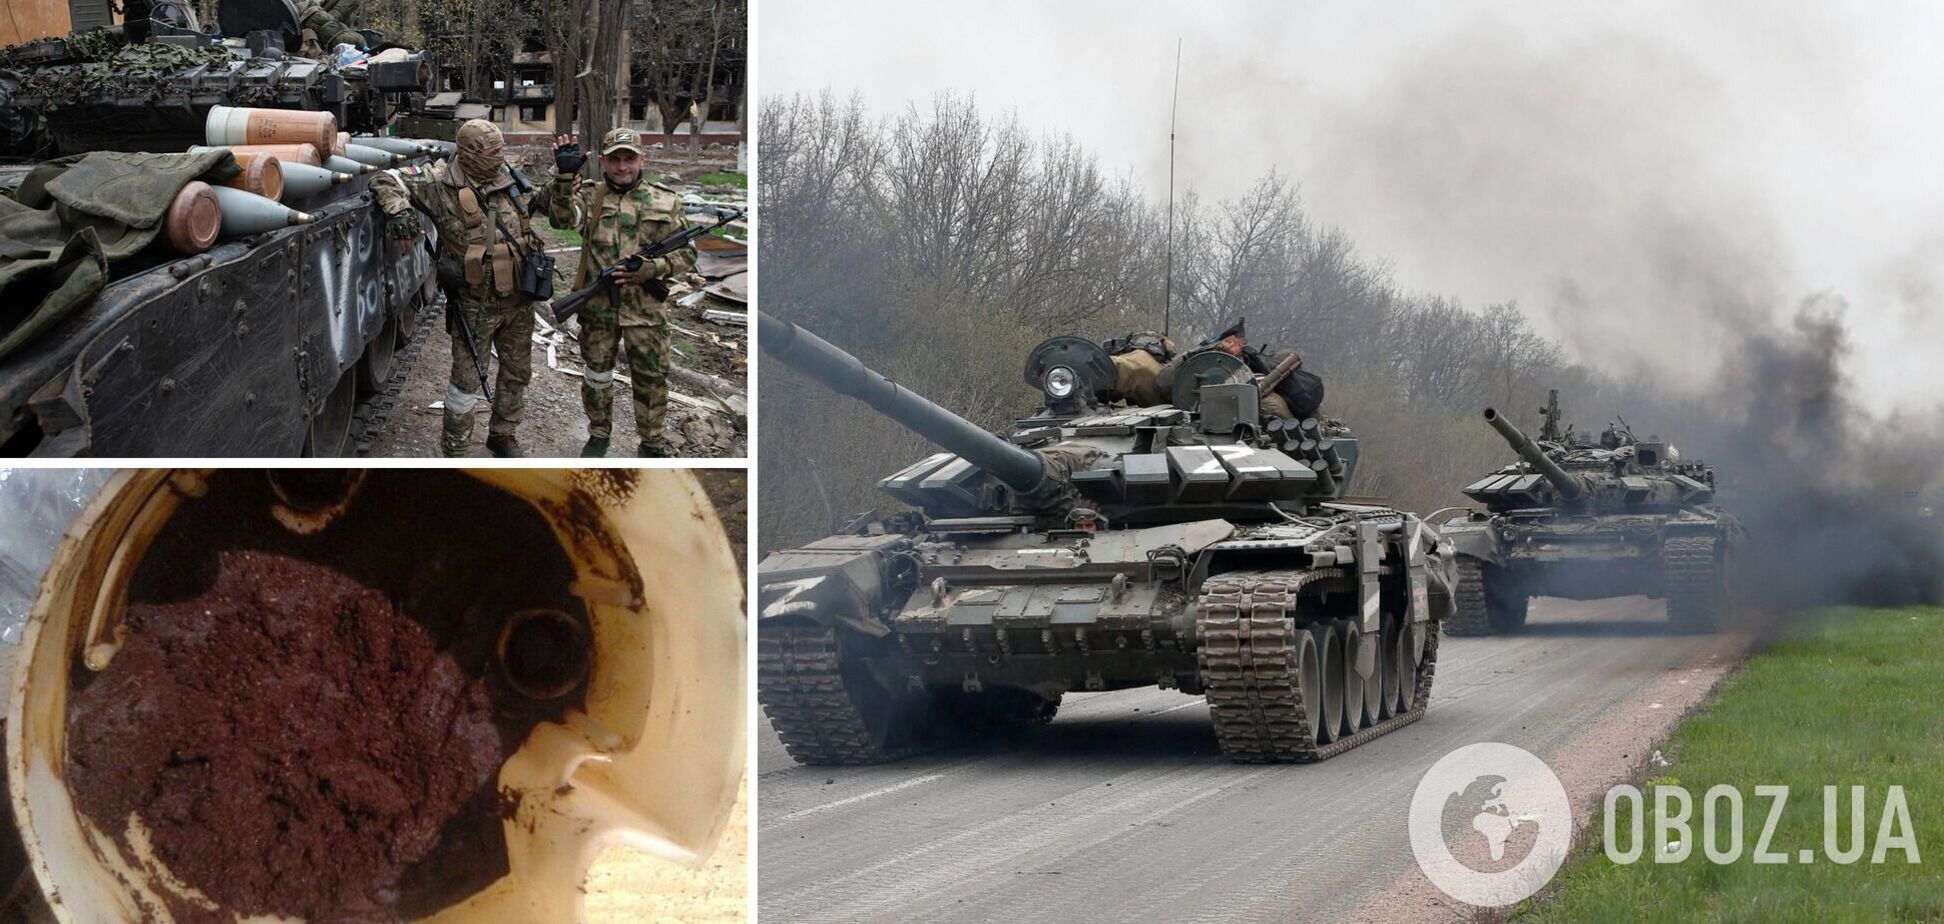 Песок в топливо и саботаж приказов: оккупанты придумали 'лайфхаки', как не умереть на войне в Украине